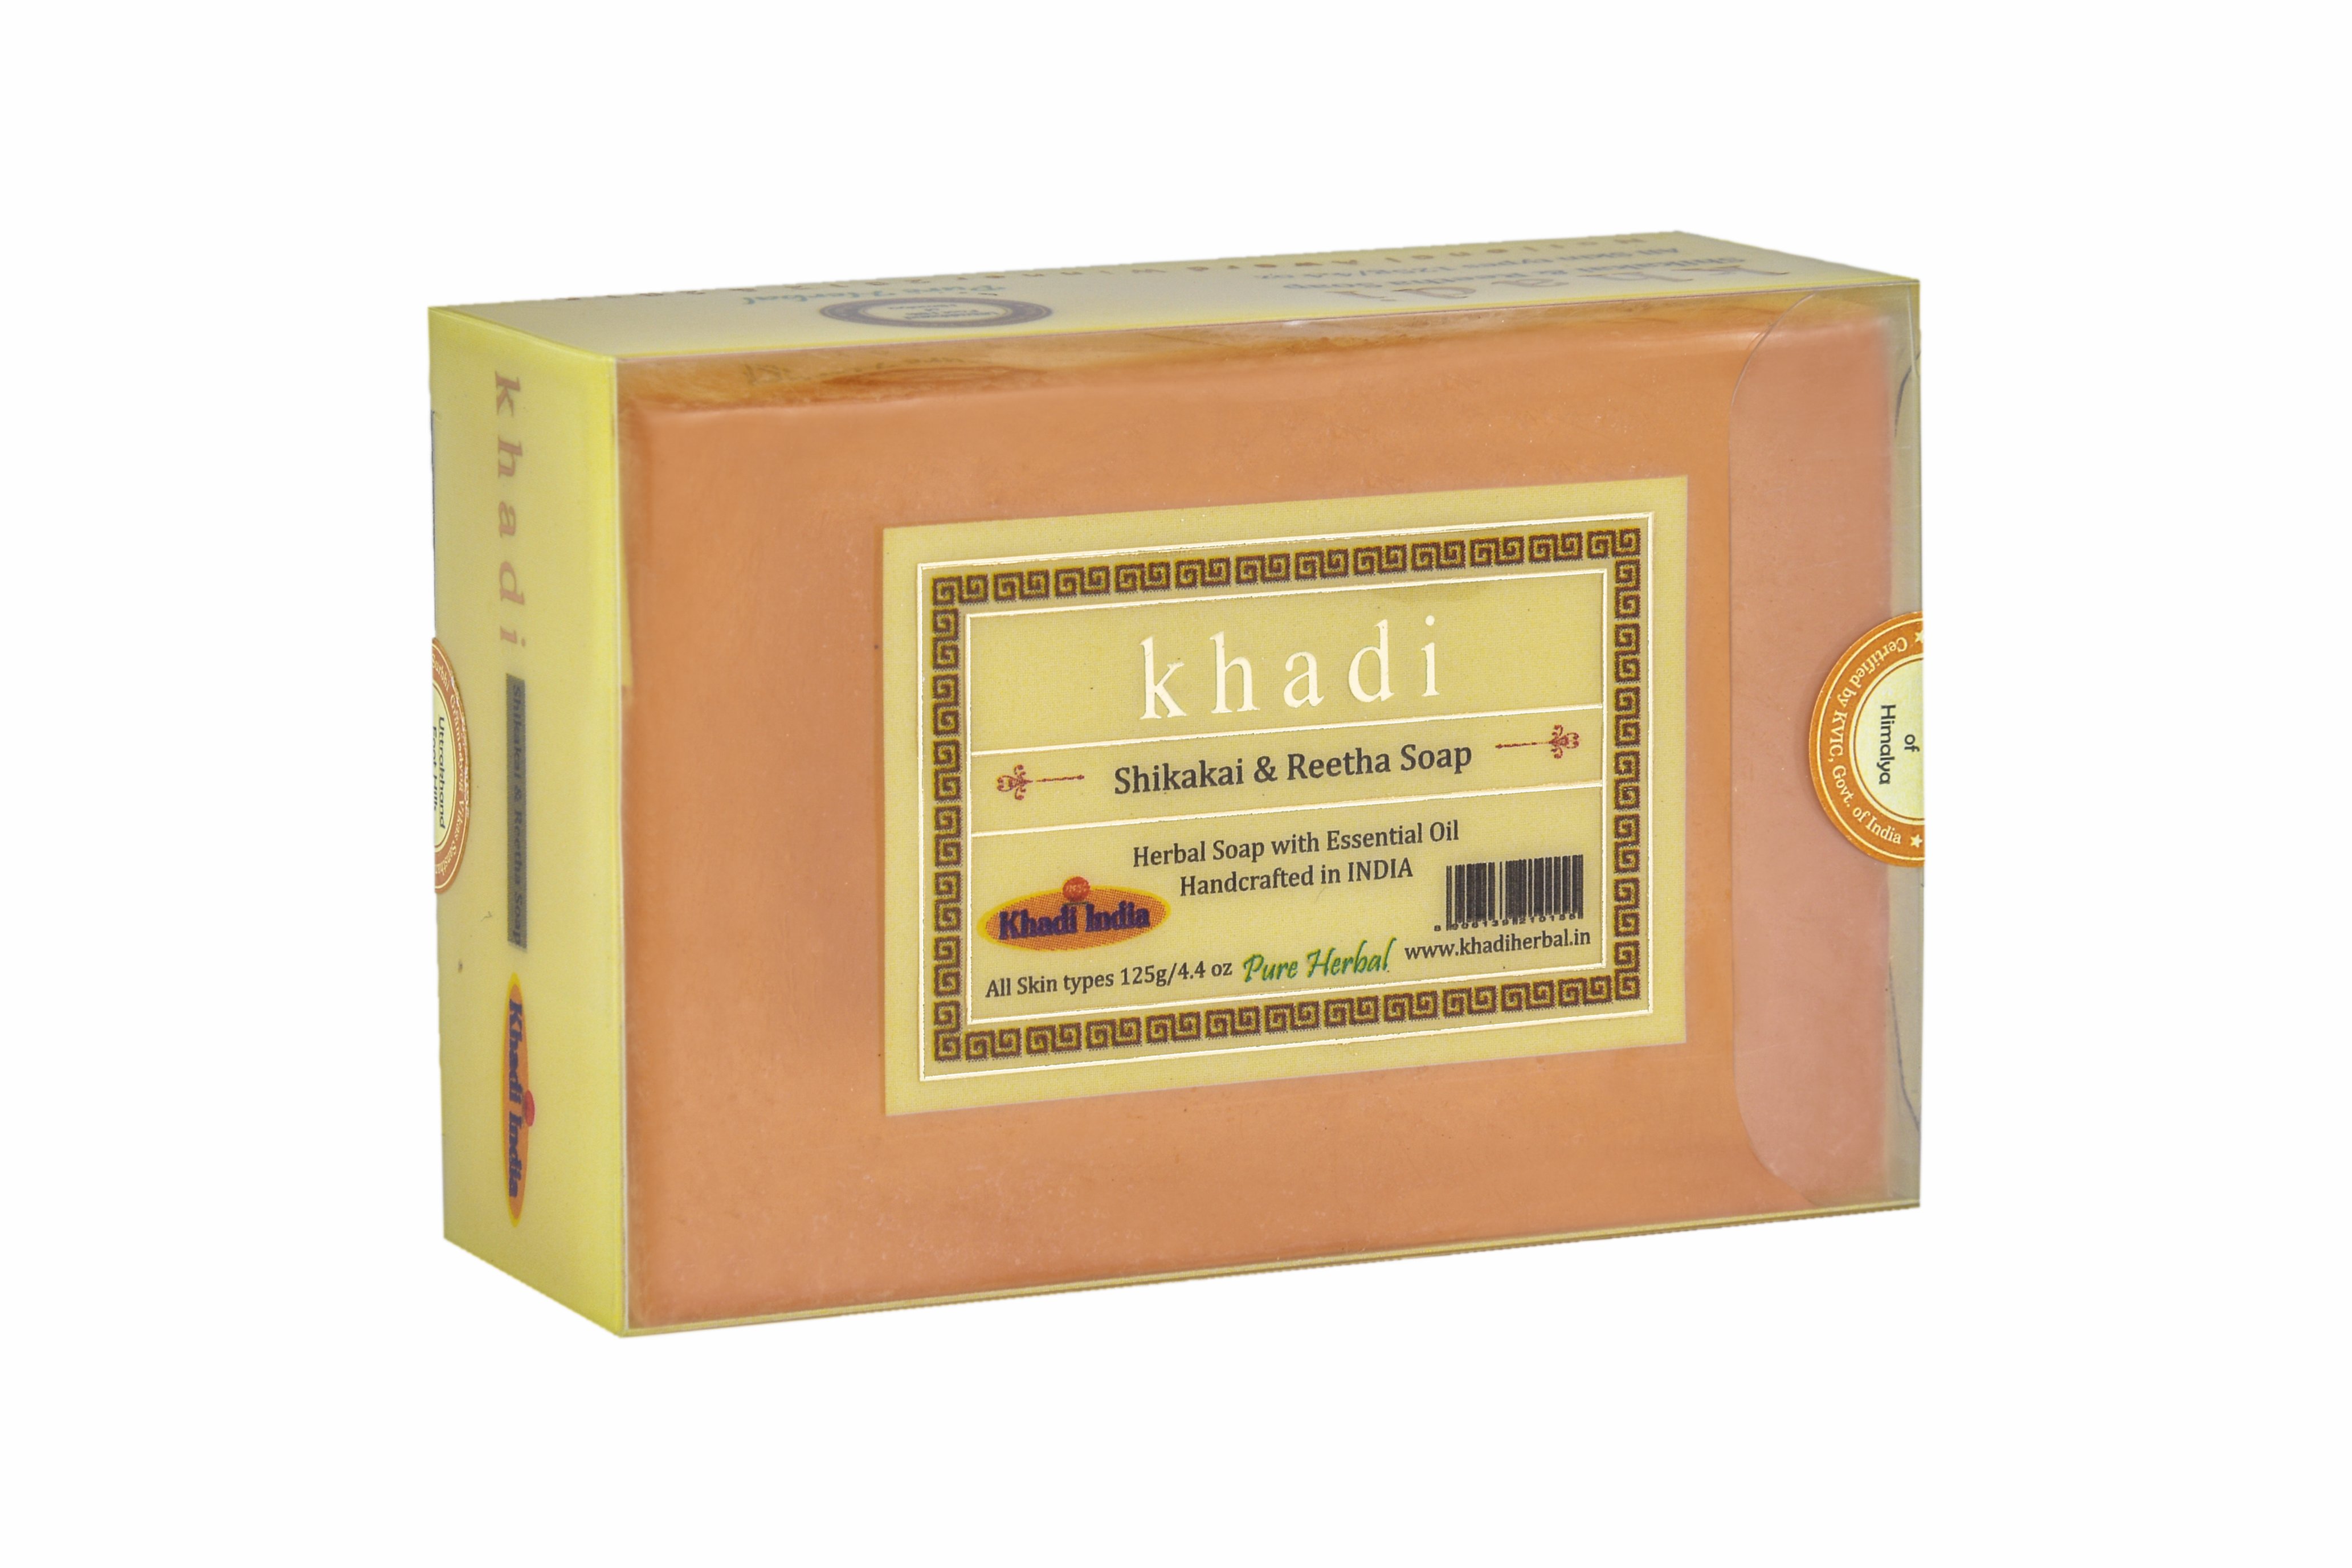 Khadi SHIKAKAI & REETHA SOAP, Khadi India (ШИКАКАЙ И РИТХА МЫЛО ручной работы с эфирными маслами, Кхади Индия), 125 г.